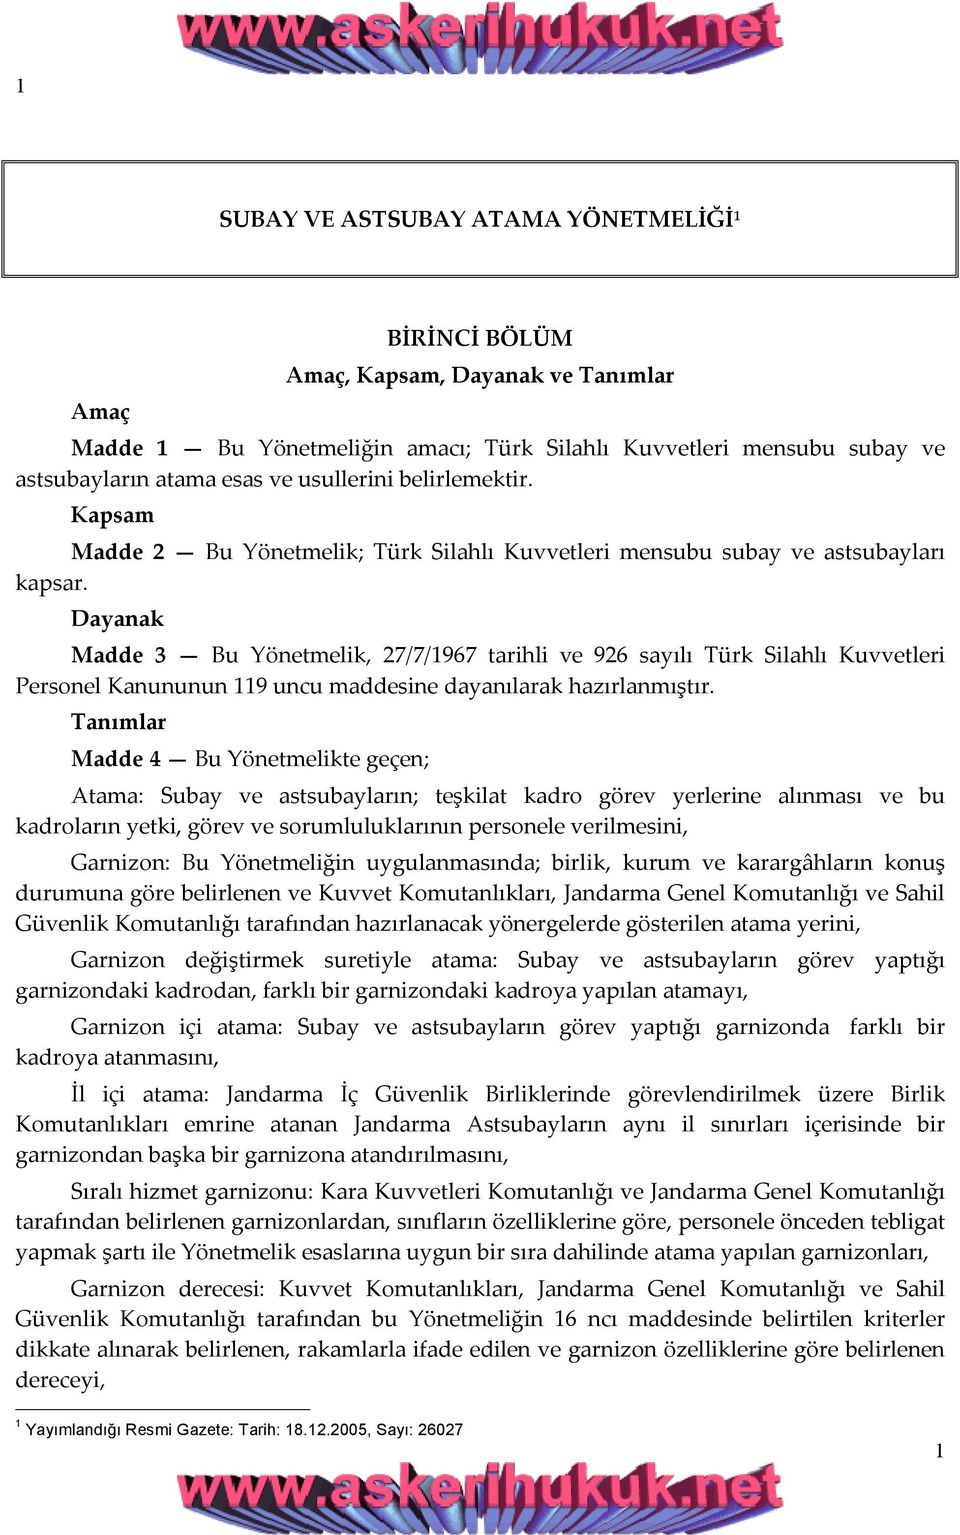 Dayanak Madde 3 Bu Yönetmelik, 27/7/1967 tarihli ve 926 sayılı Türk Silahlı Kuvvetleri Personel Kanununun 119 uncu maddesine dayanılarak hazırlanmıştır.